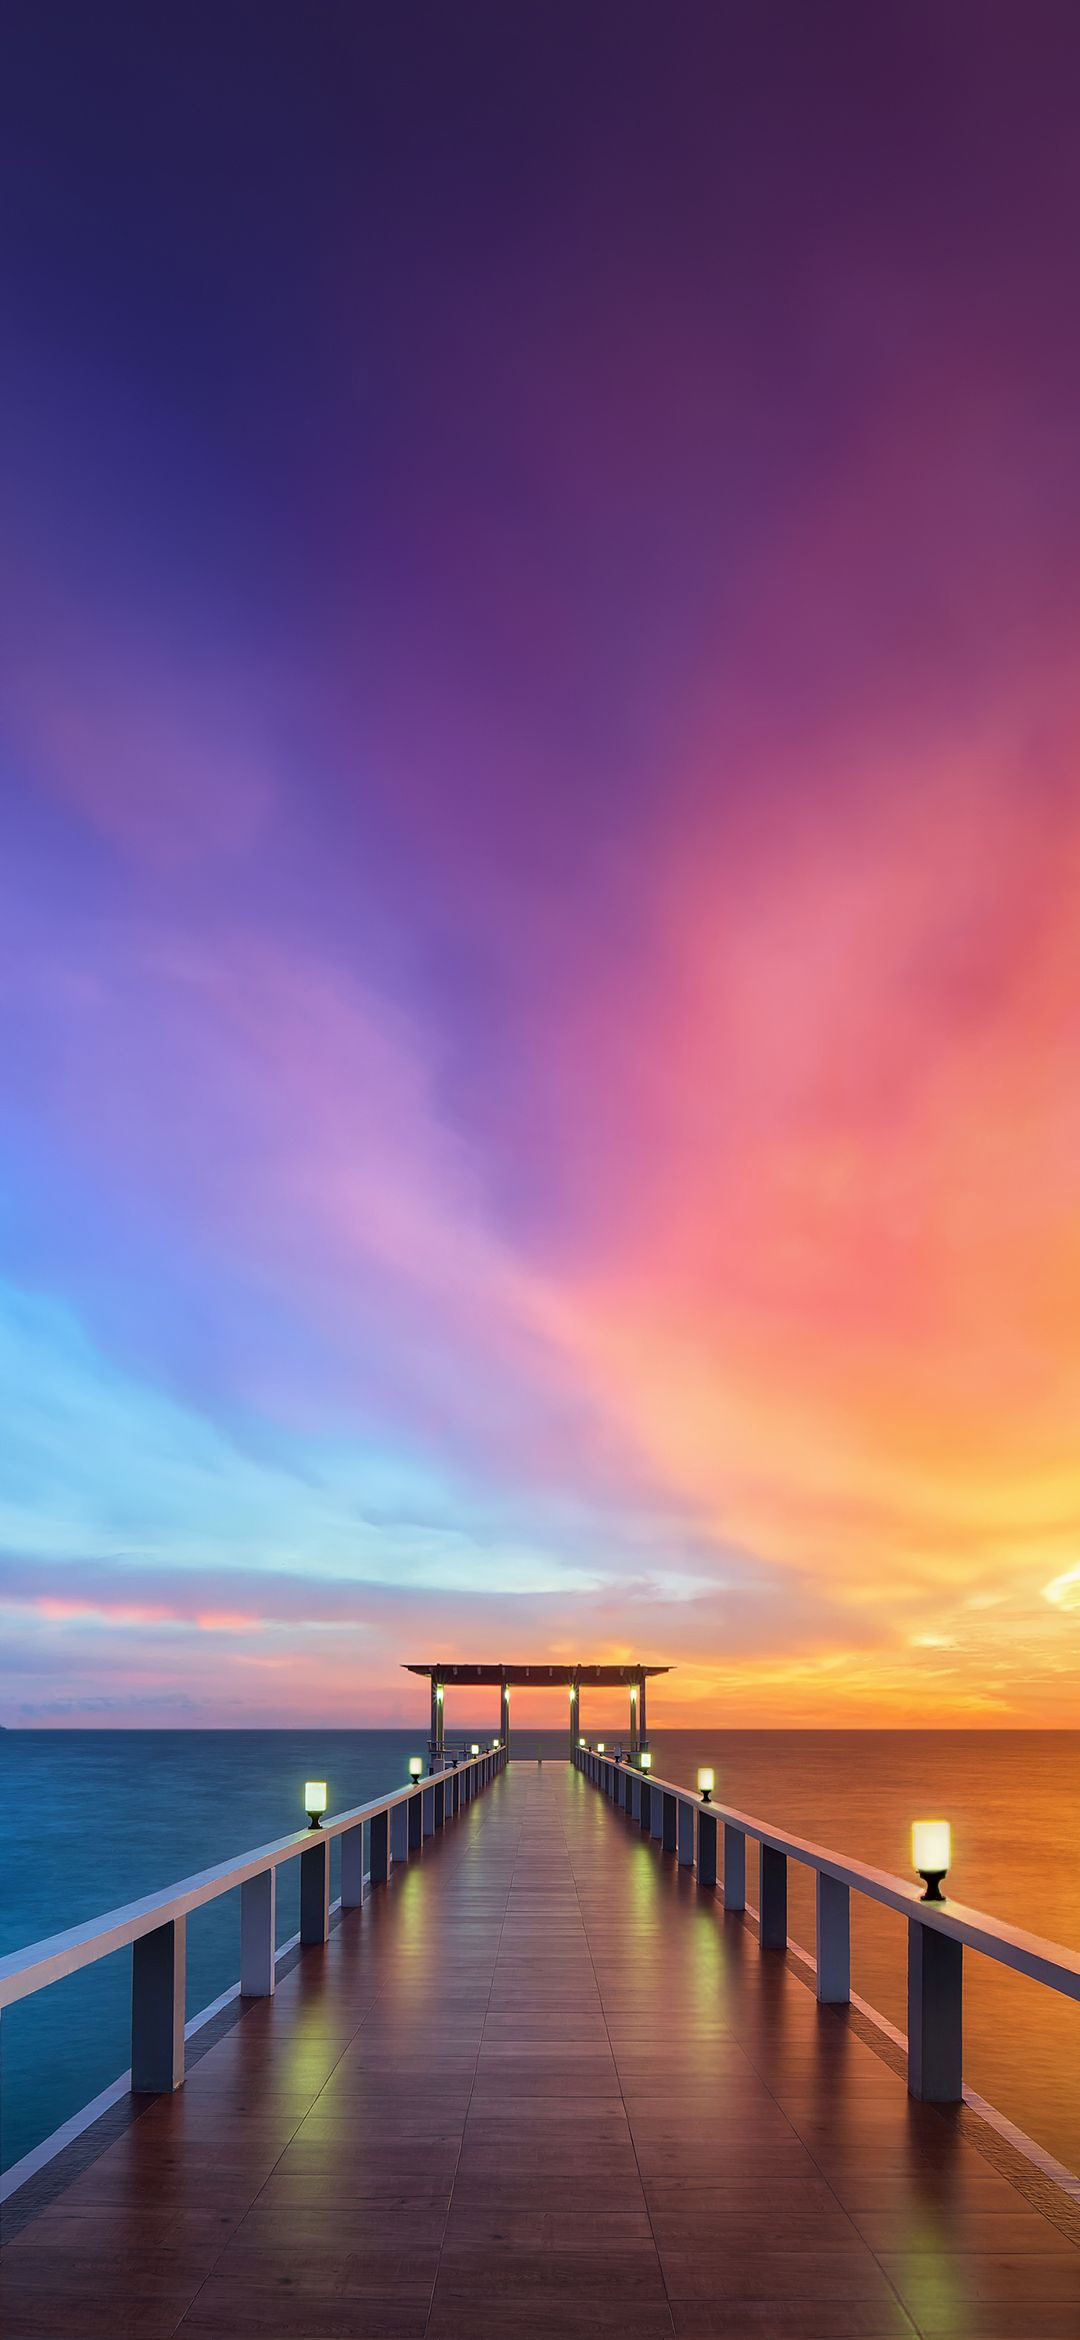 海沿いの桟橋と紫の空 Redmagic 5 Android スマホ壁紙 待ち受け スマラン